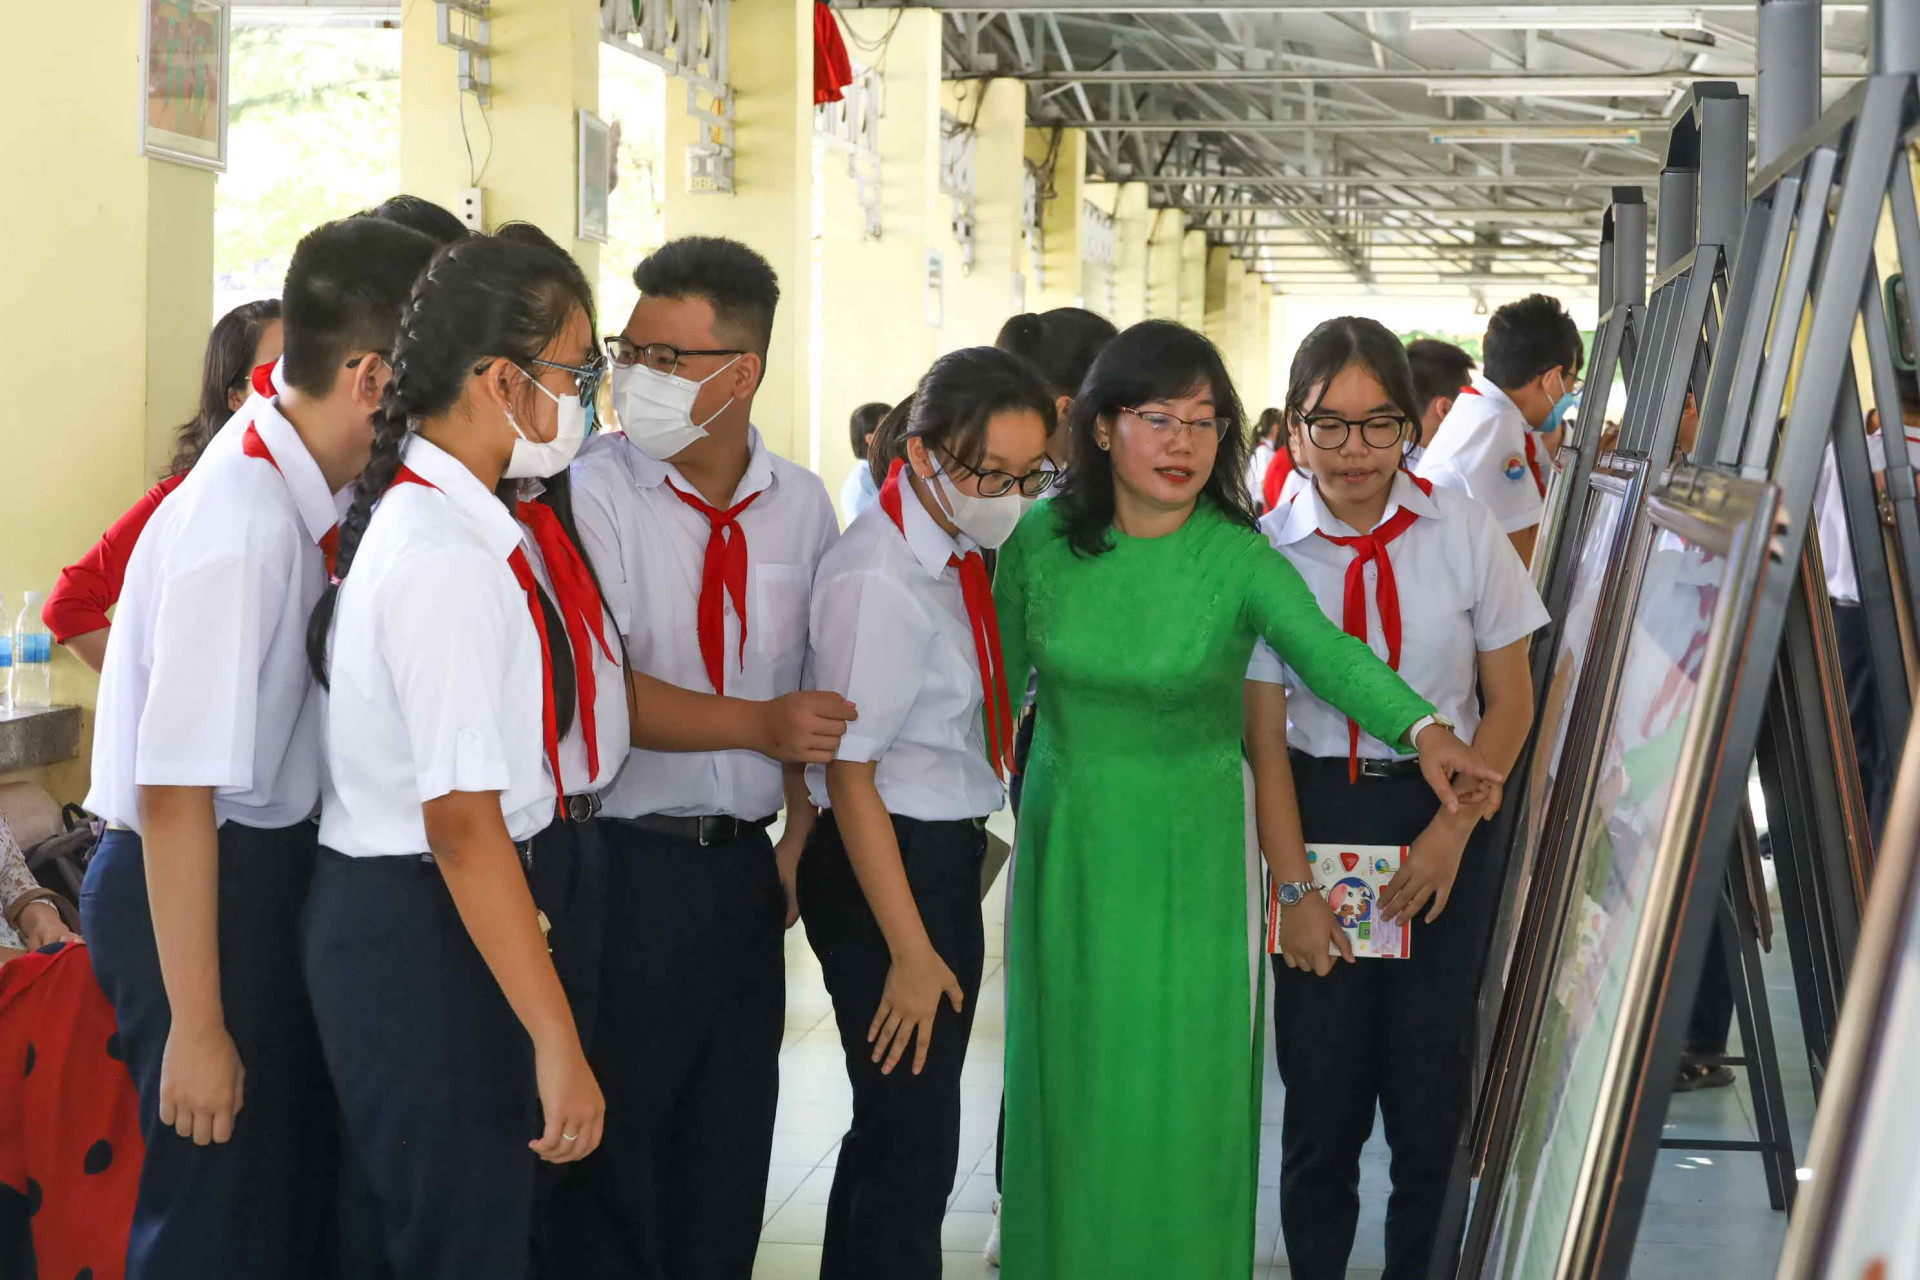 Giáo viên, học sinh Trường THCS Thái Nguyên xem hình ảnh giới thiệu về chứng cứ lịch sử, pháp lý về Hoàng Sa, Trường Sa của Việt Nam. 